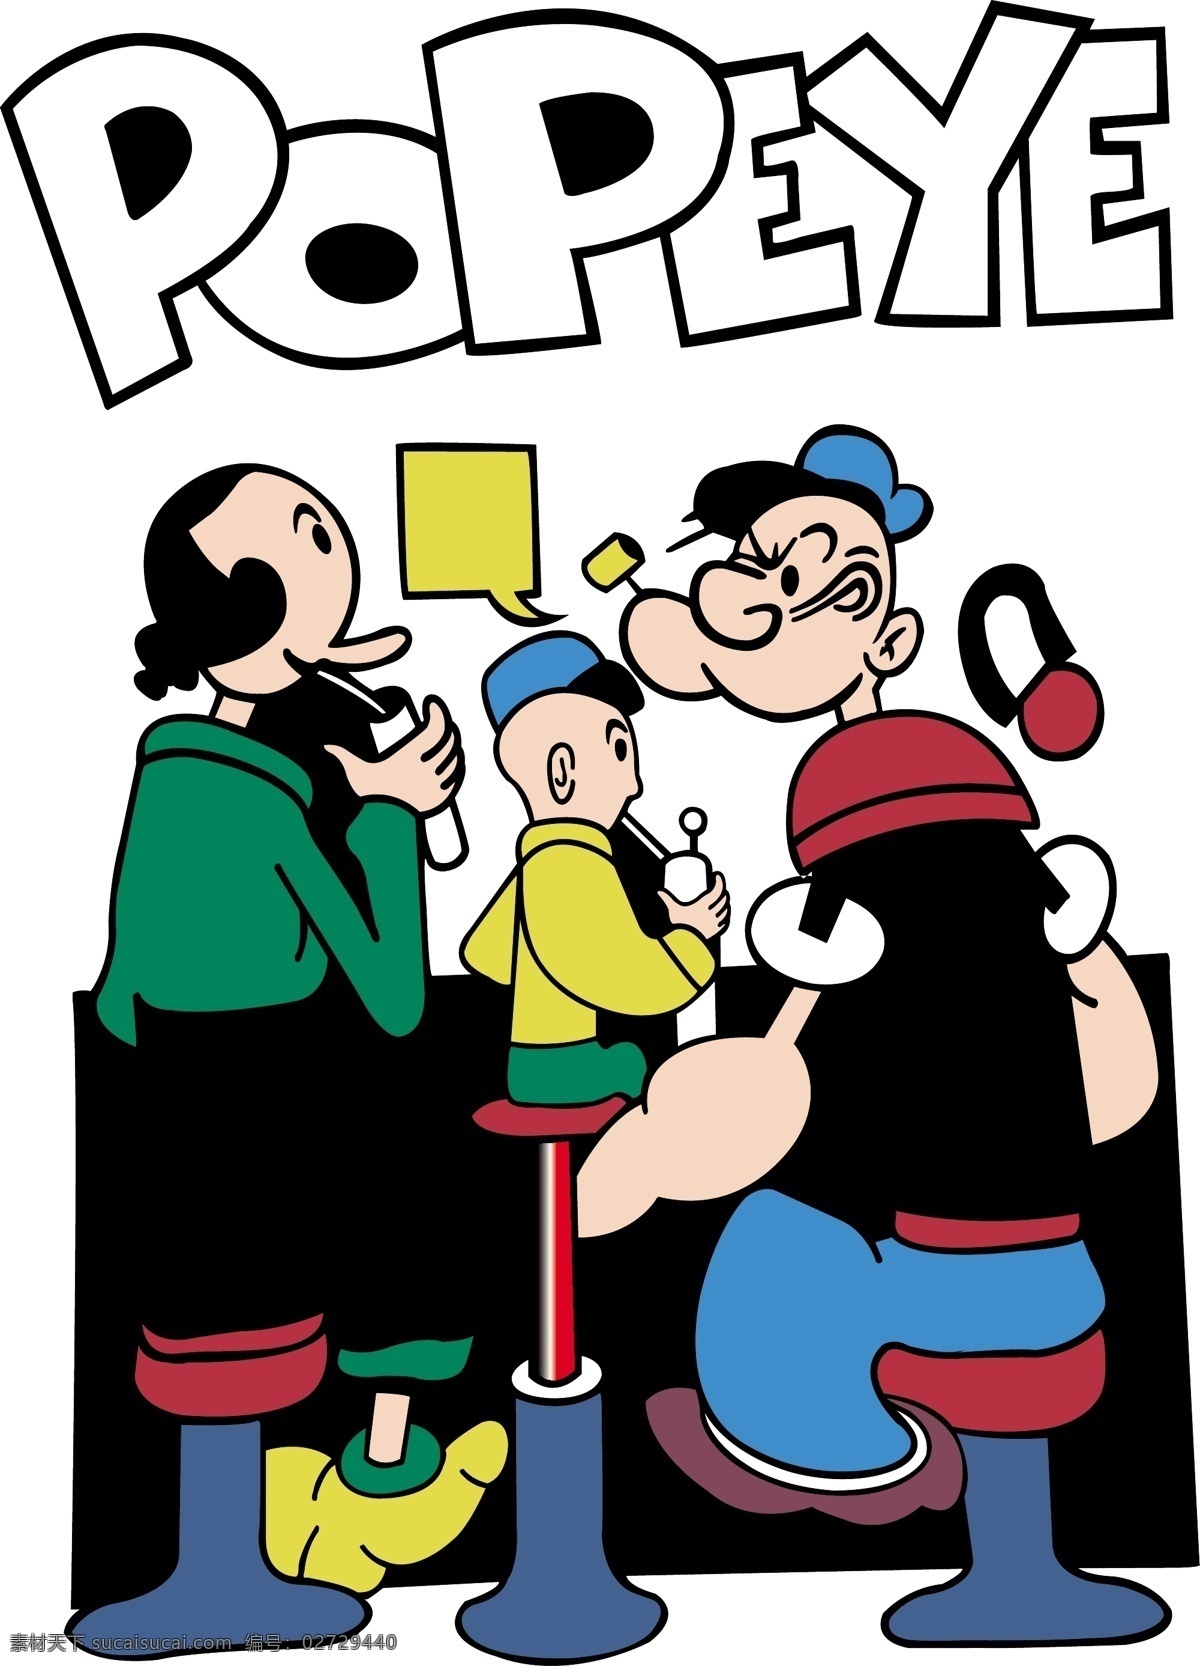 大力水手 popeye 一家三口 个性图案 三口之家 图案 动漫动画 动漫人物